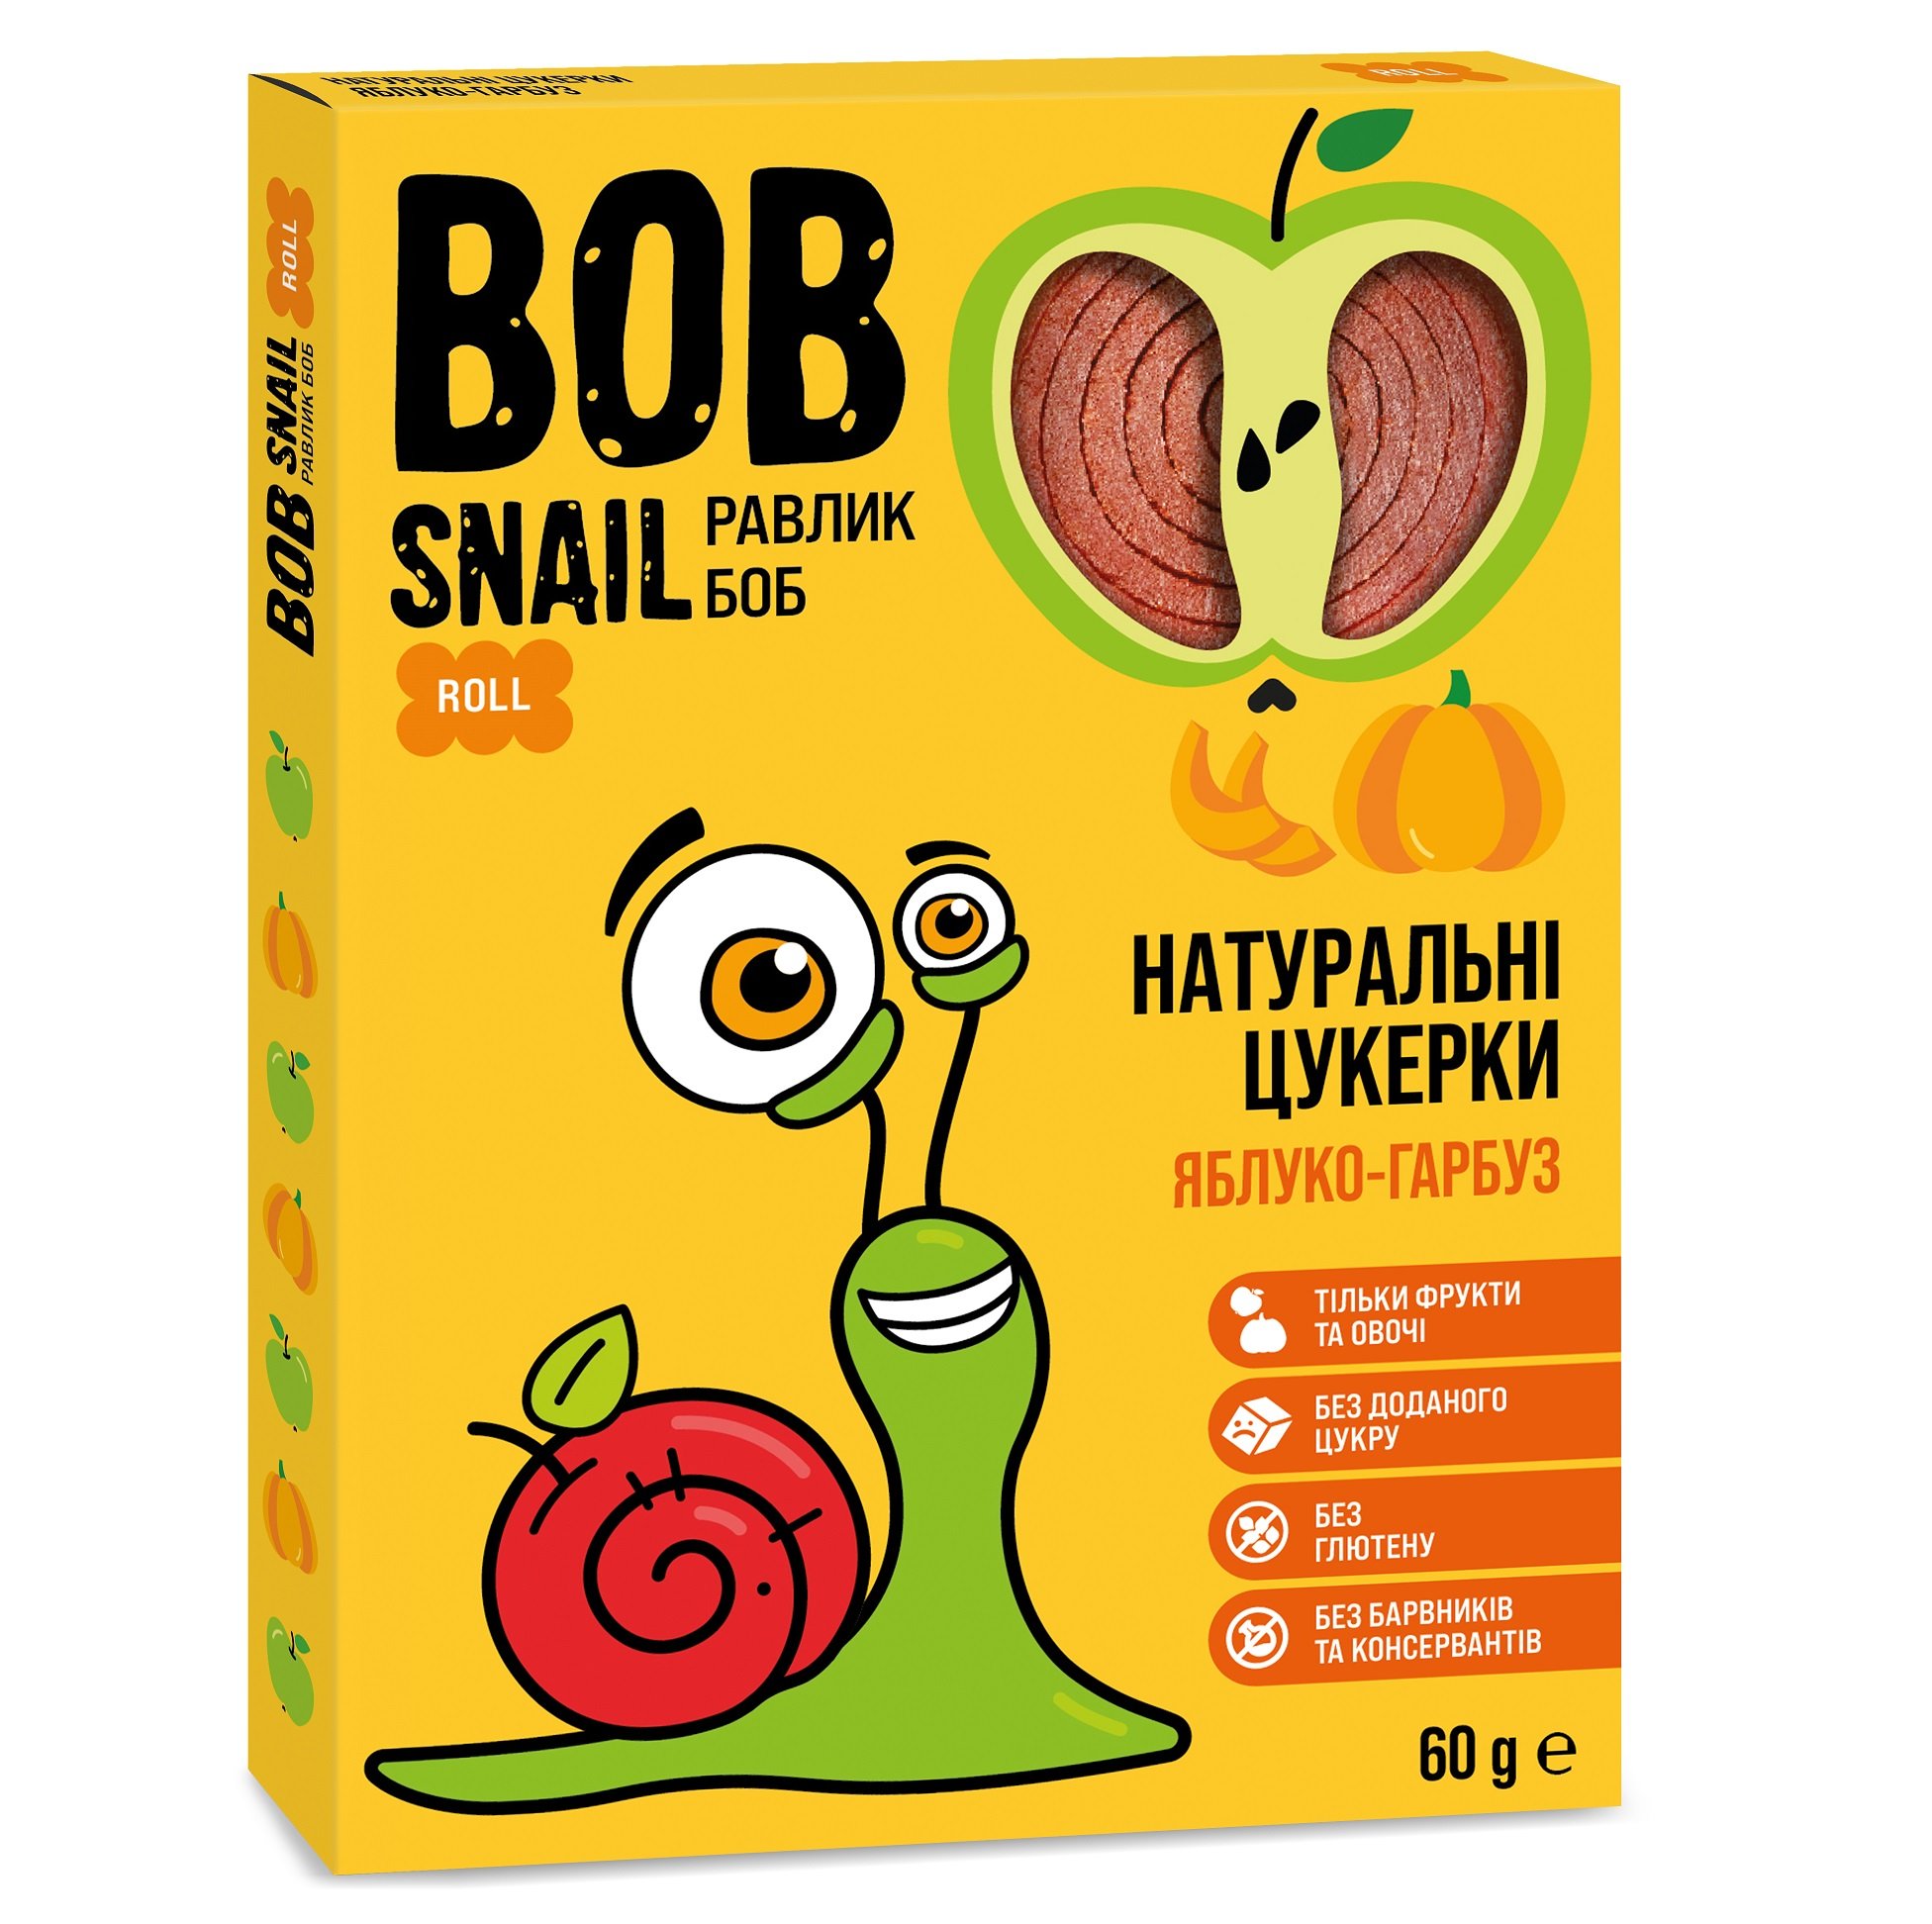 Натуральні цукерки Bob Snail Равлик Боб Яблуко та Гарбуз, 60 г - фото 1